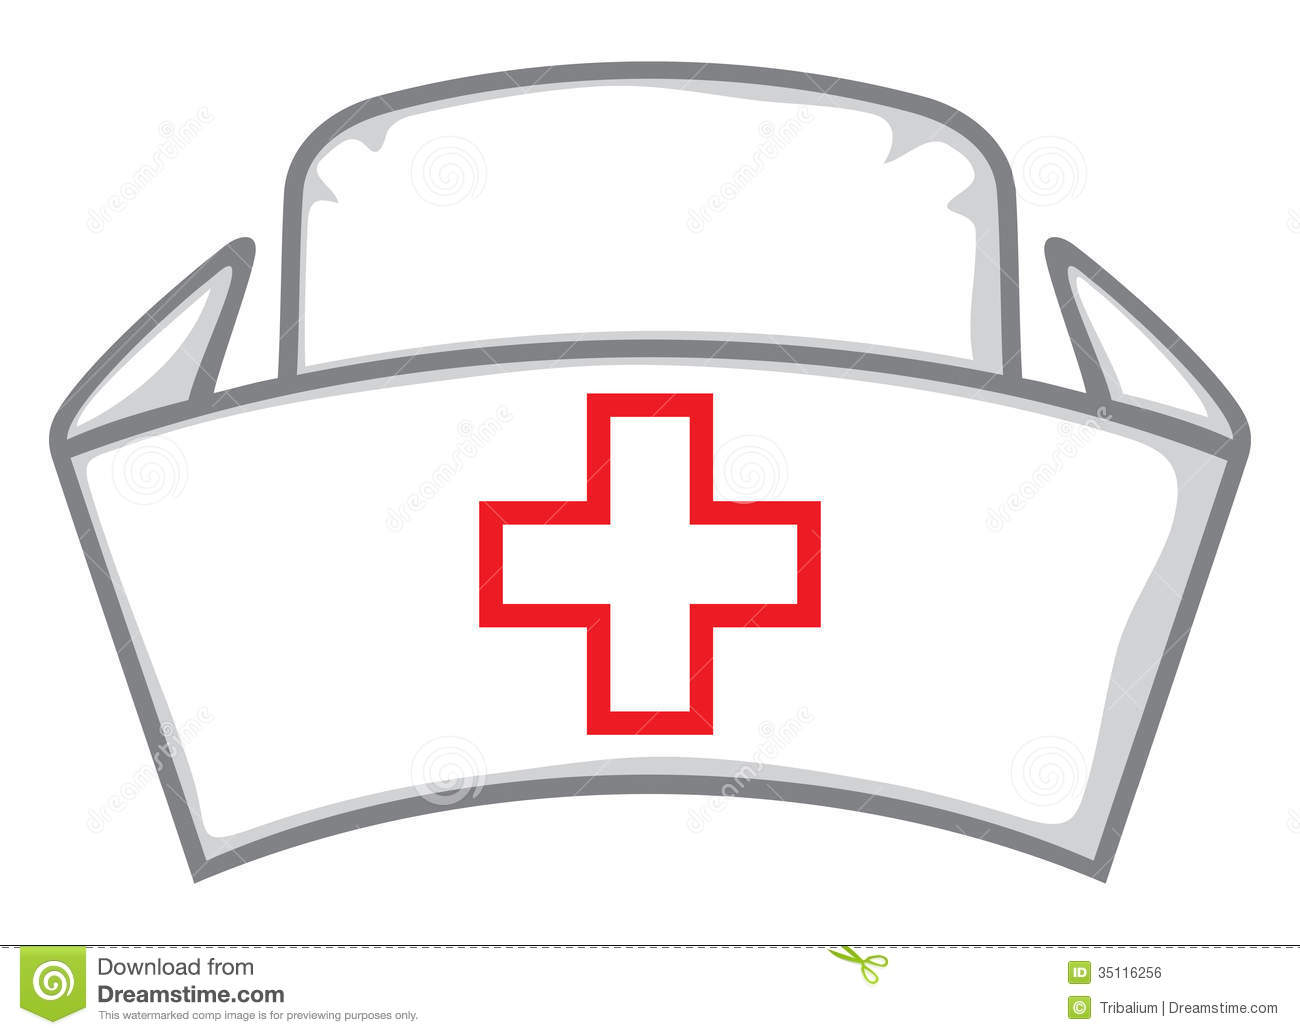 Vector - nurse cap